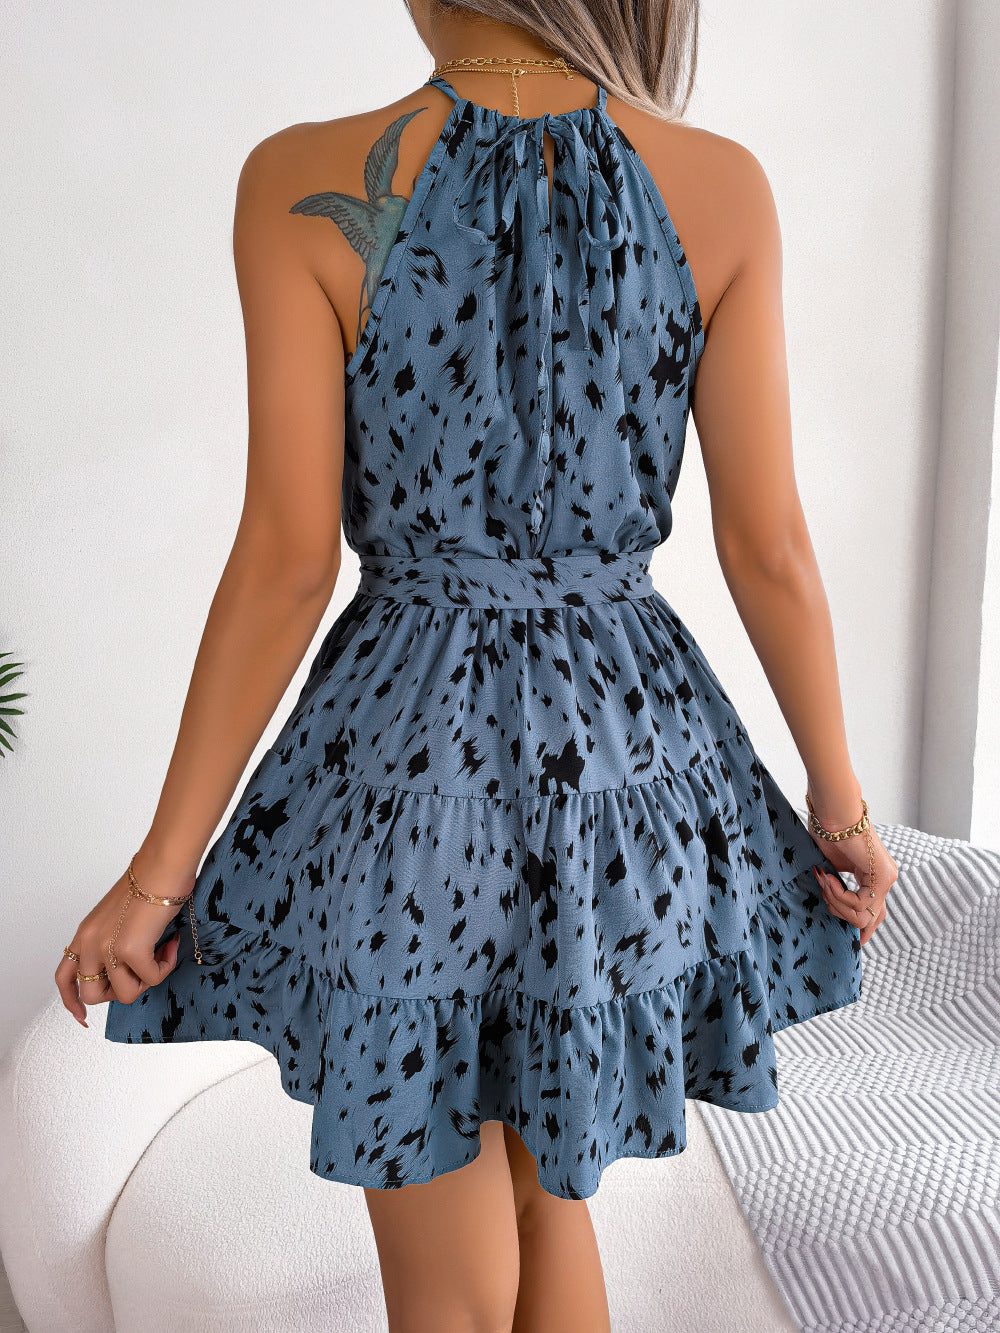 Viral Tiktok Casual Leopard Print Swing Dress